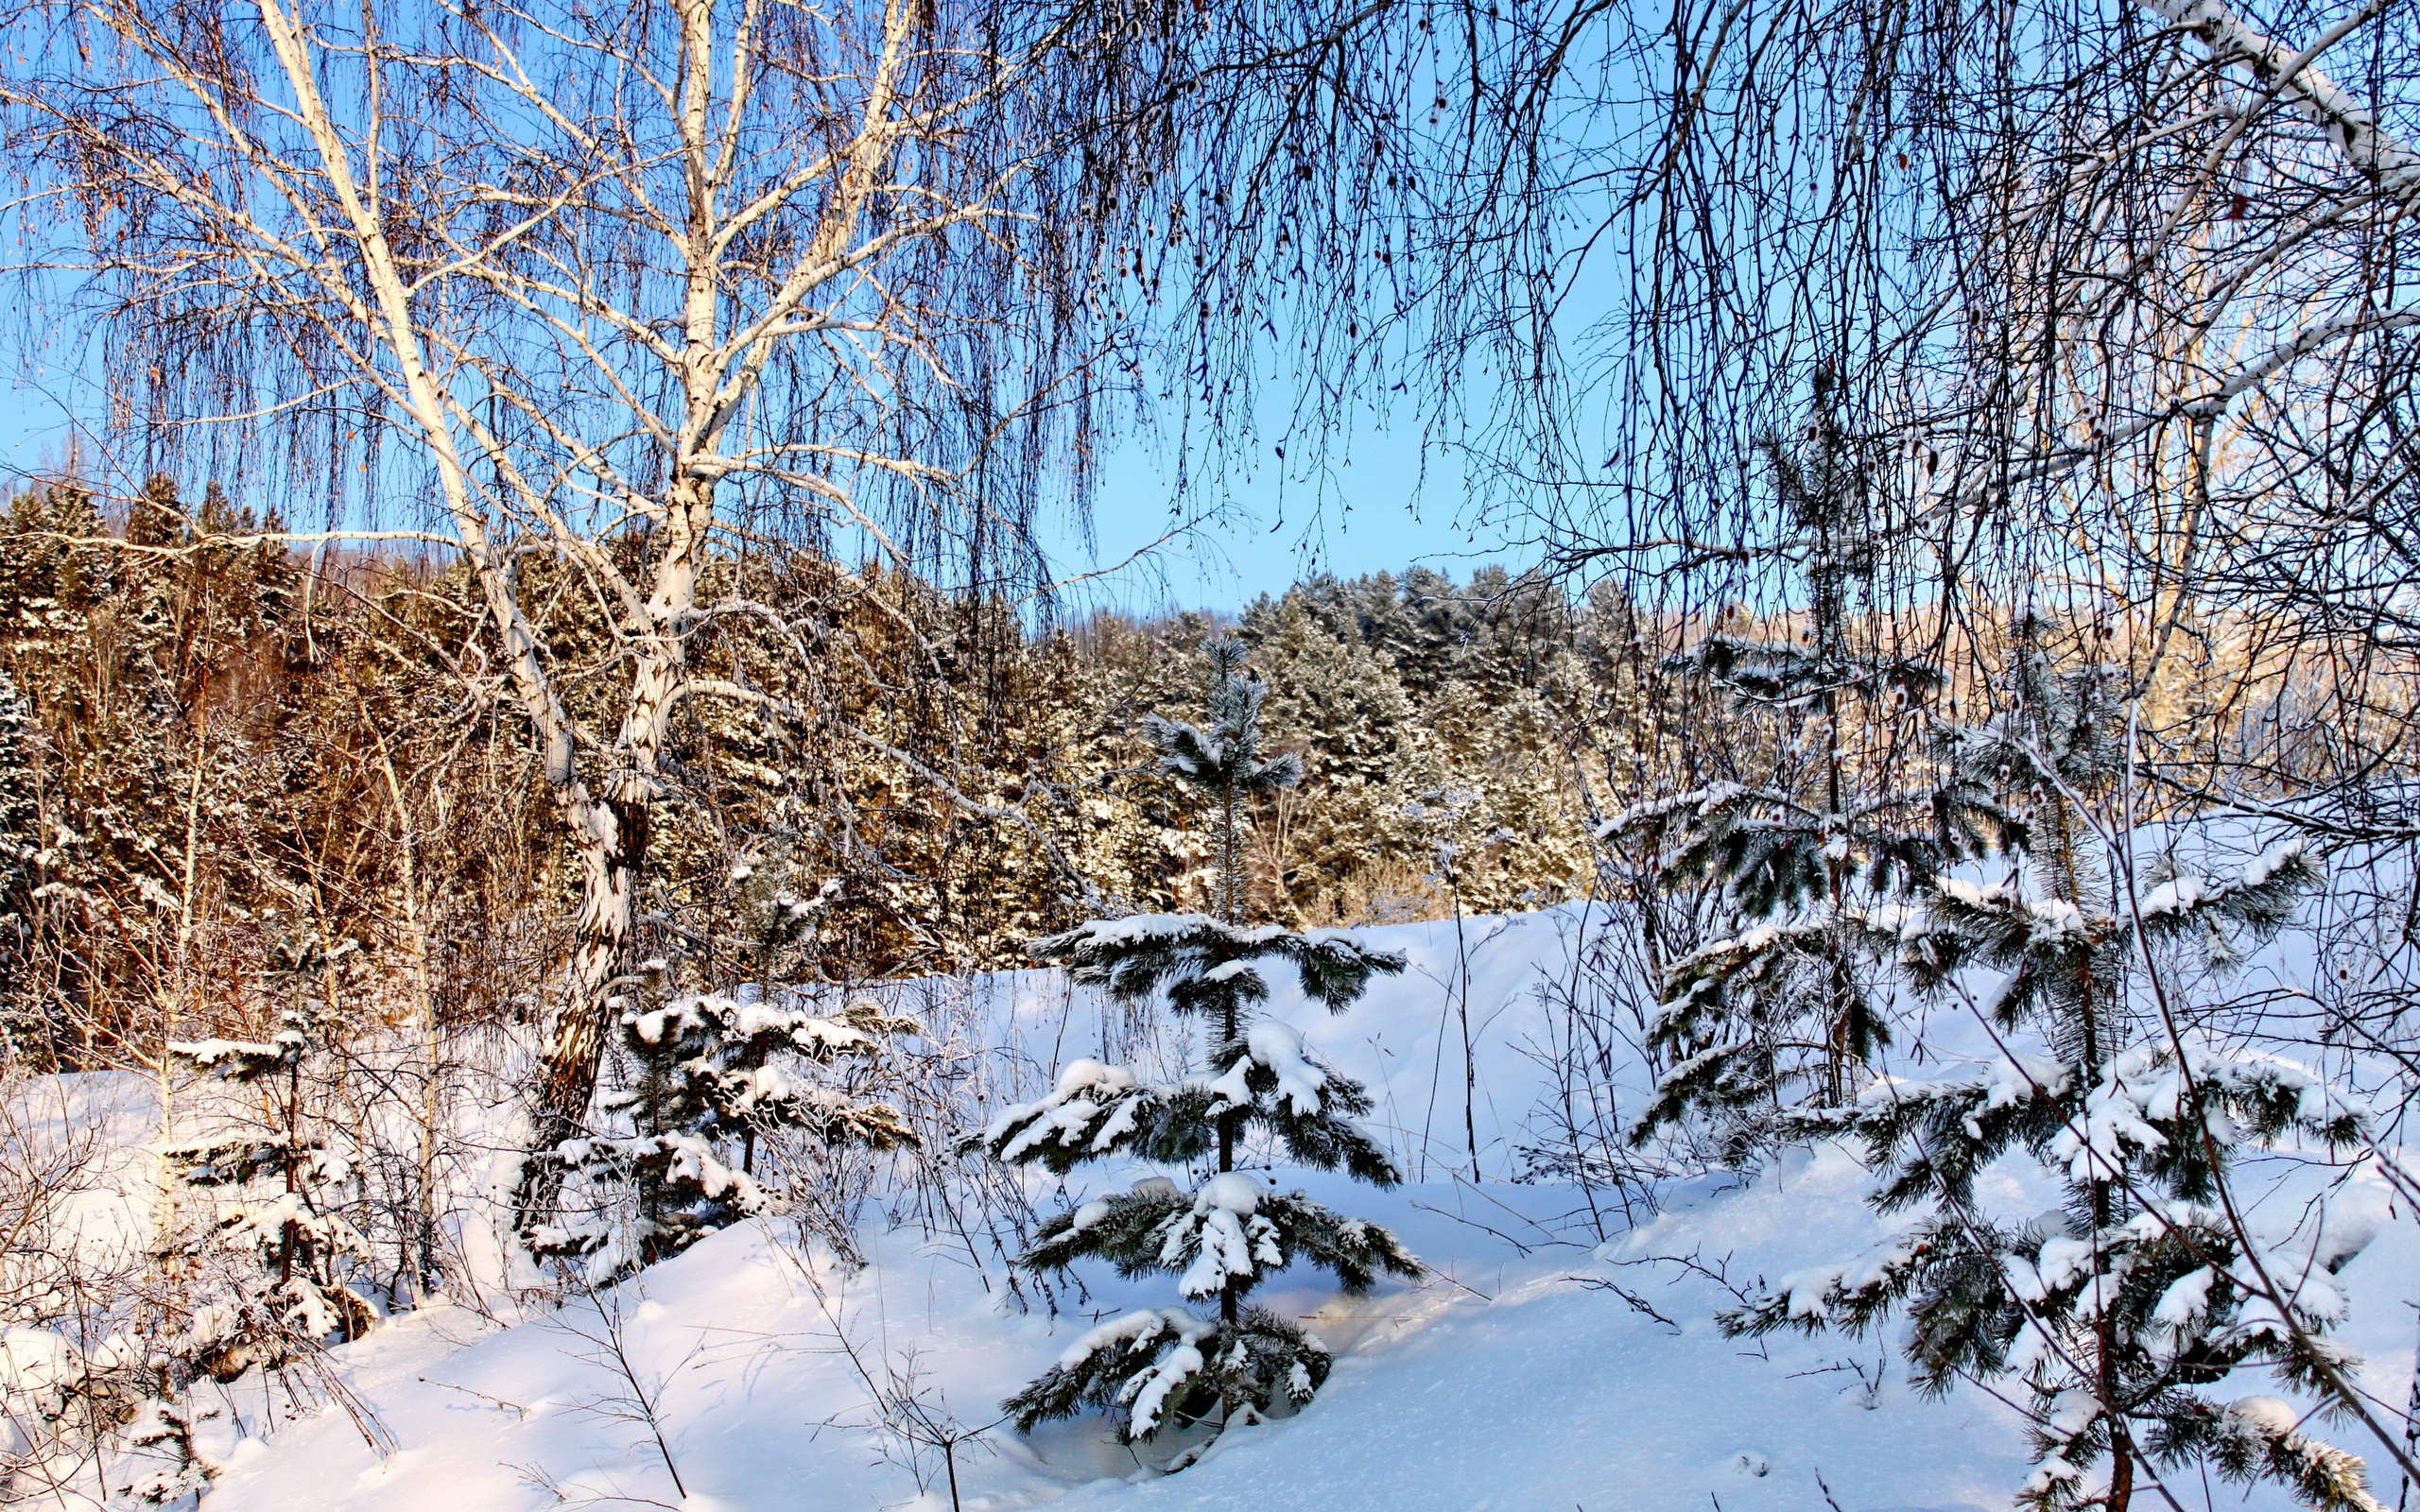 جدید ترین تصویر ها از برف های سفید در فصل زمستان 